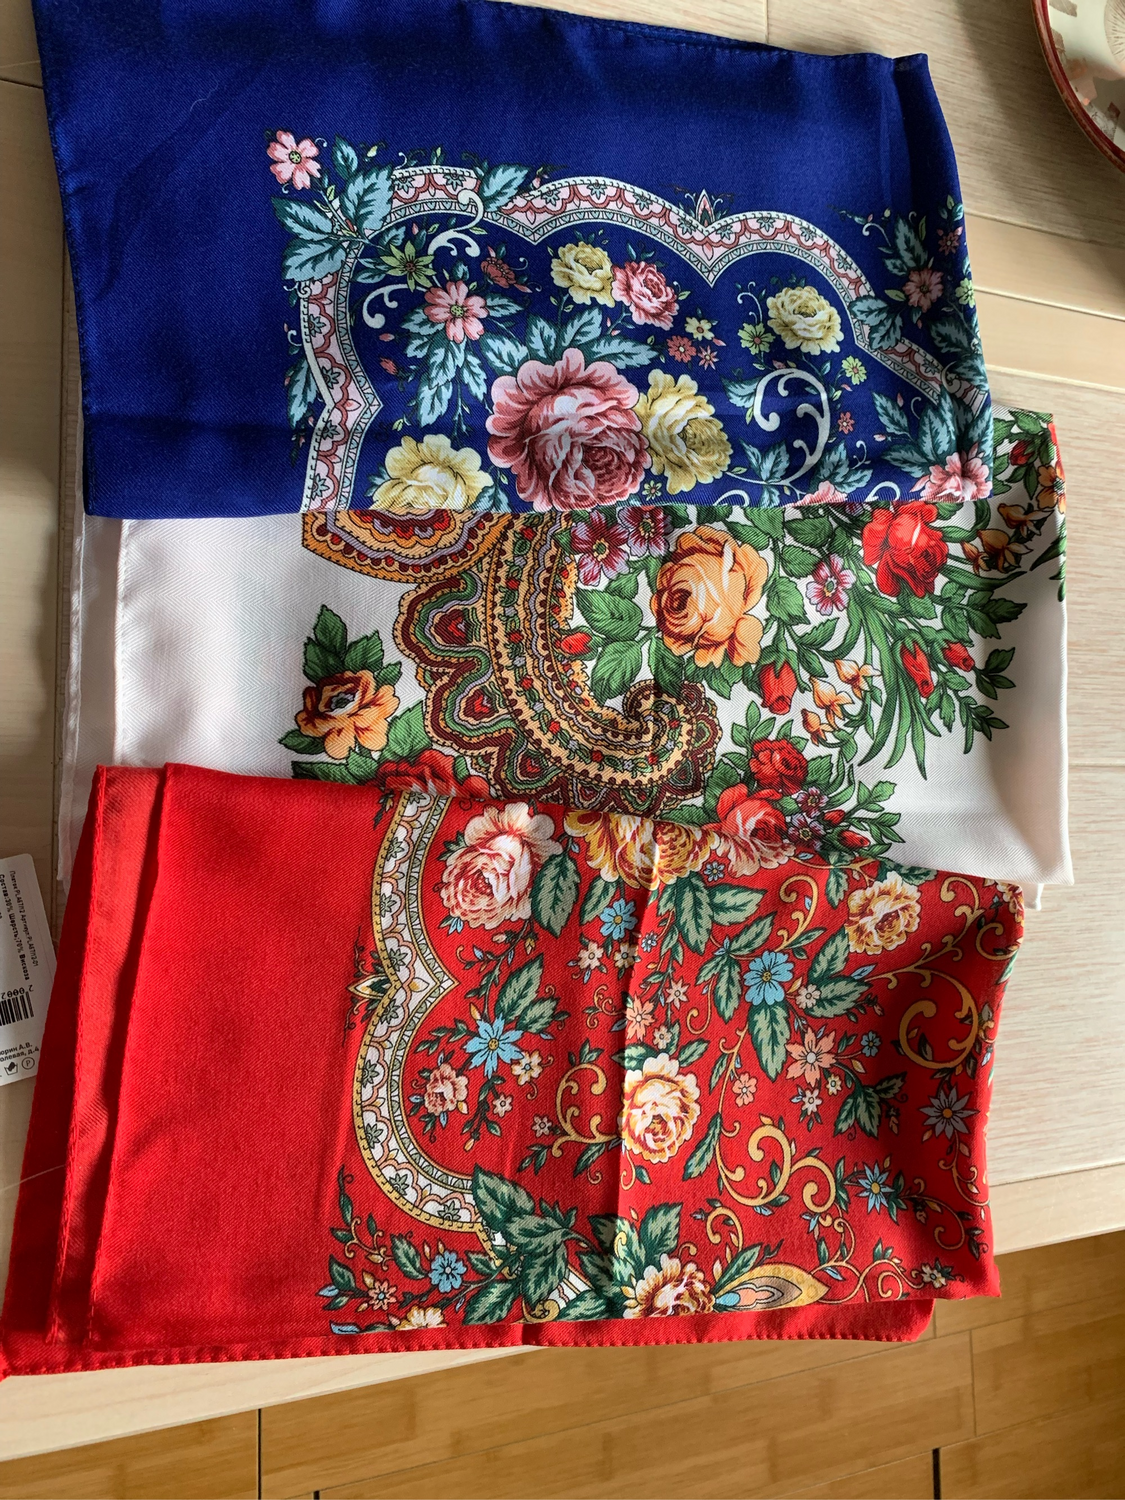 Фото №1 к отзыву покупателя Ivanova Anna о товаре Платок в русском стиле, синий, размер 80х80 и еще 2 товаров